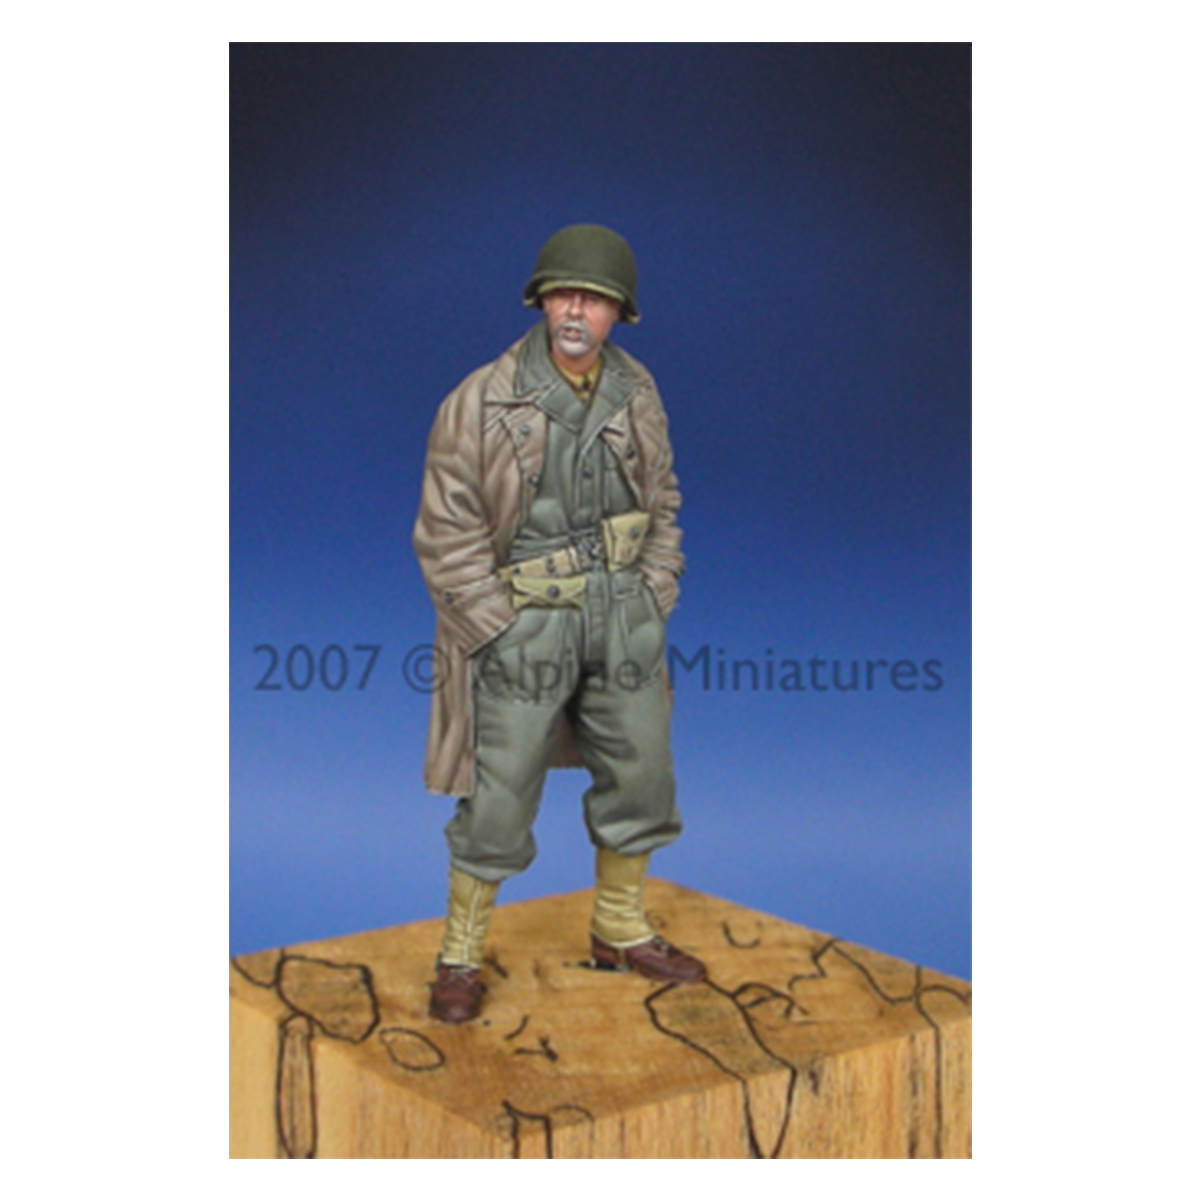 Alpine Miniatures – WW2 US Tank Crew #1 1/35